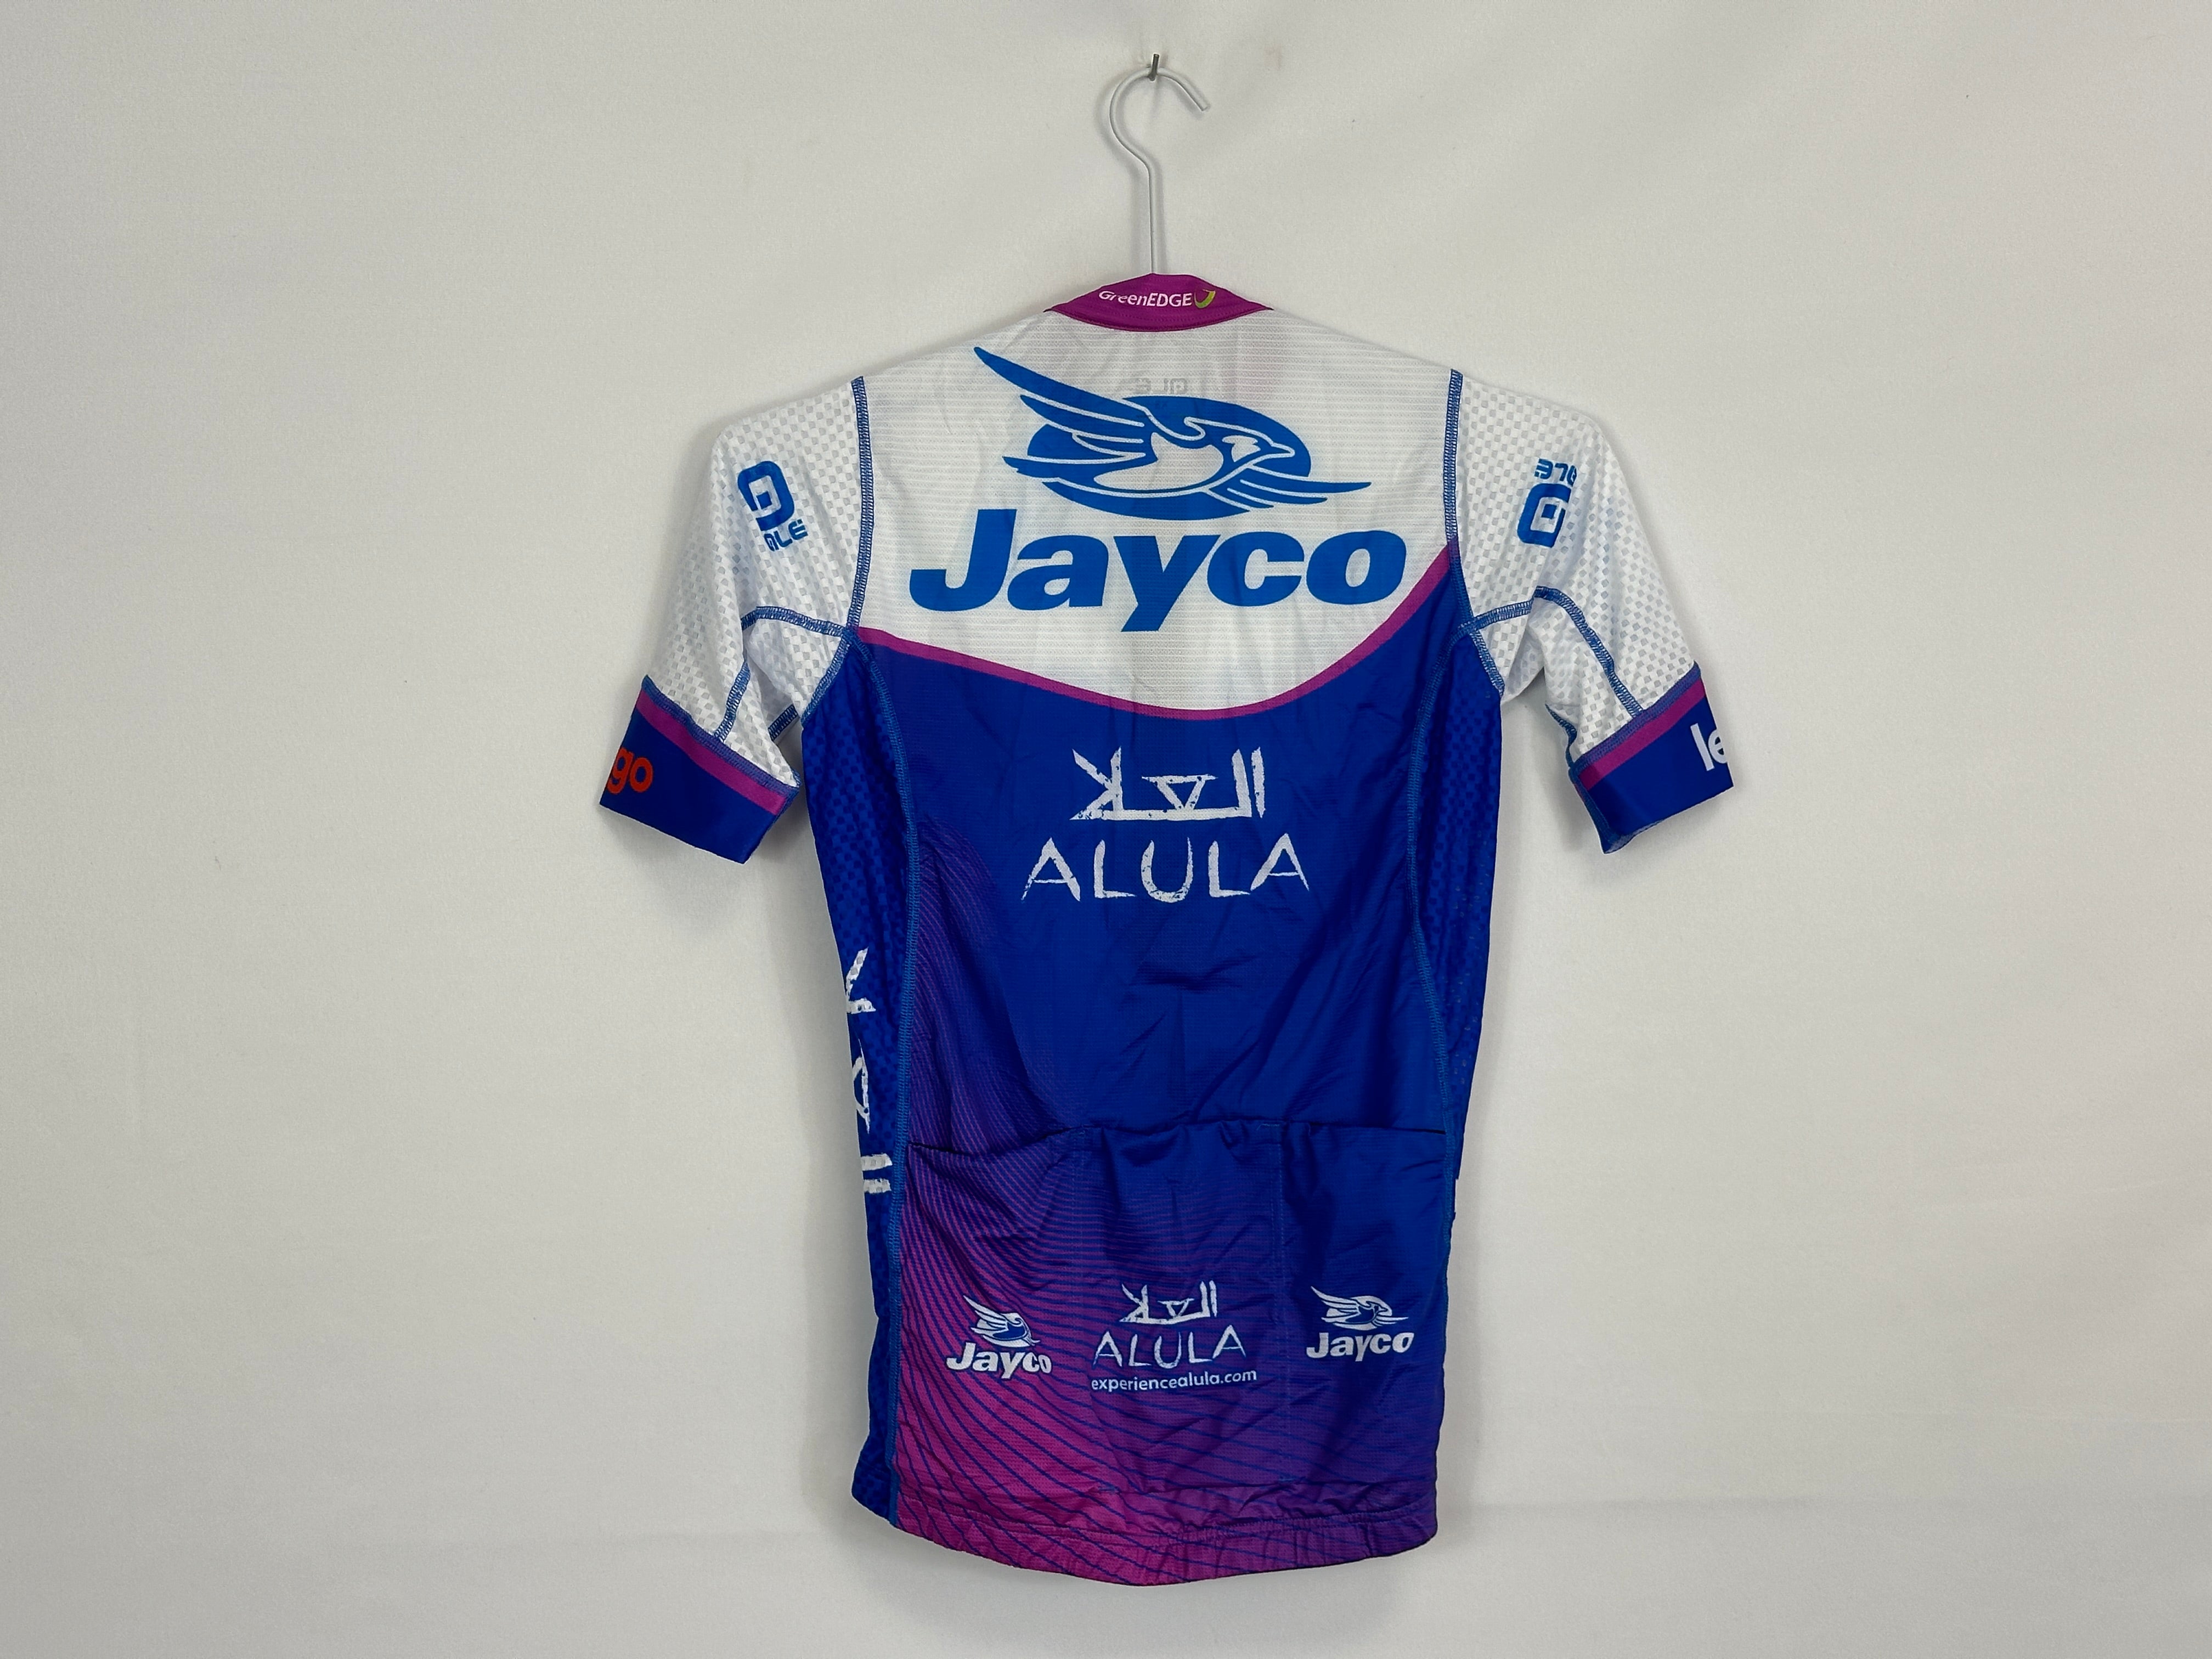 Team Jayco Alula - S/S Mesh Jersey by Alé